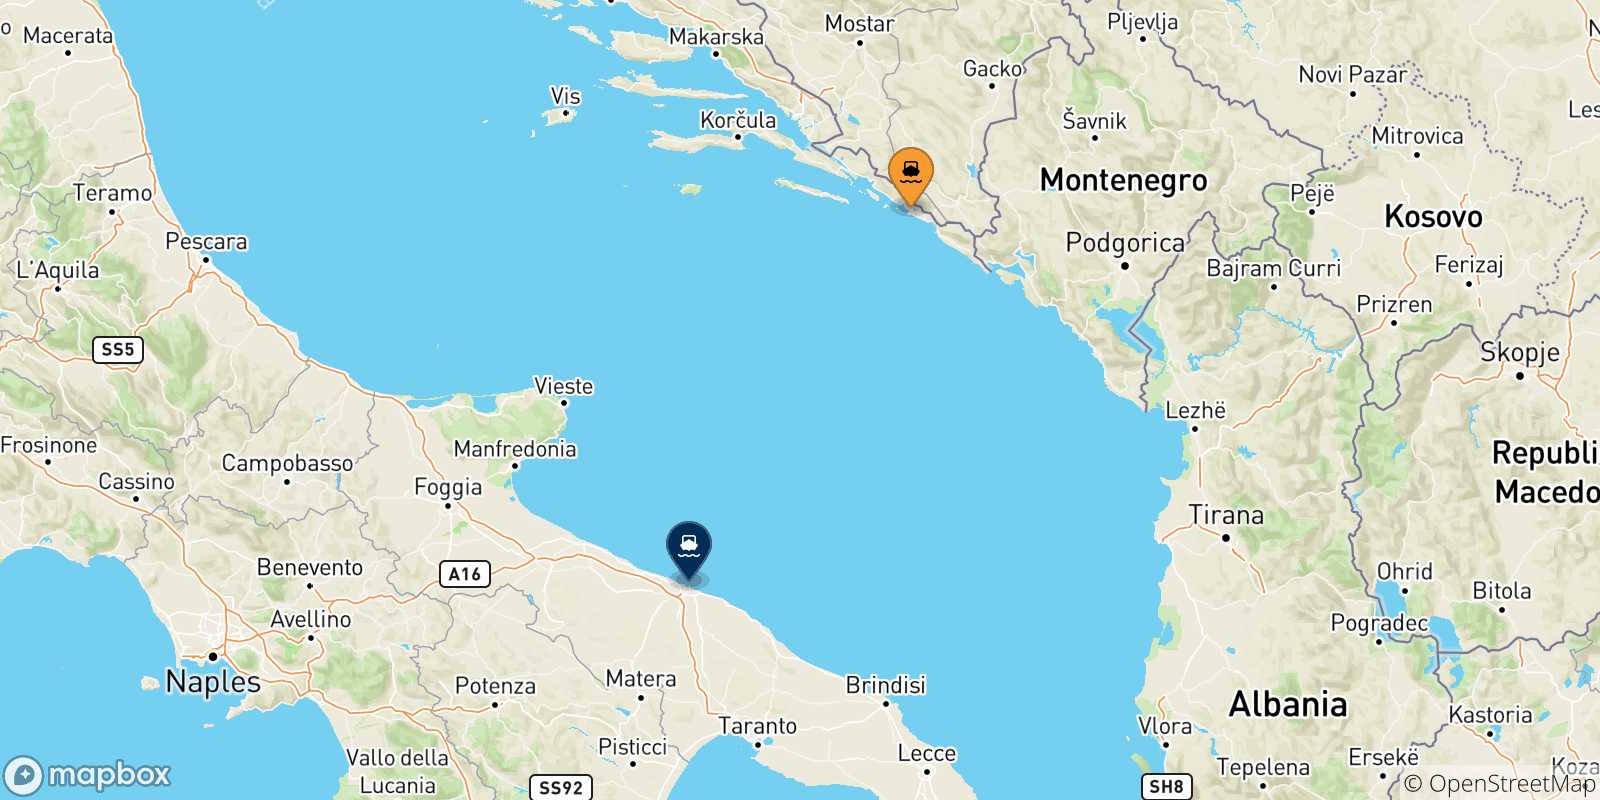 Mappa delle possibili rotte tra Dubrovnik e l'Italia